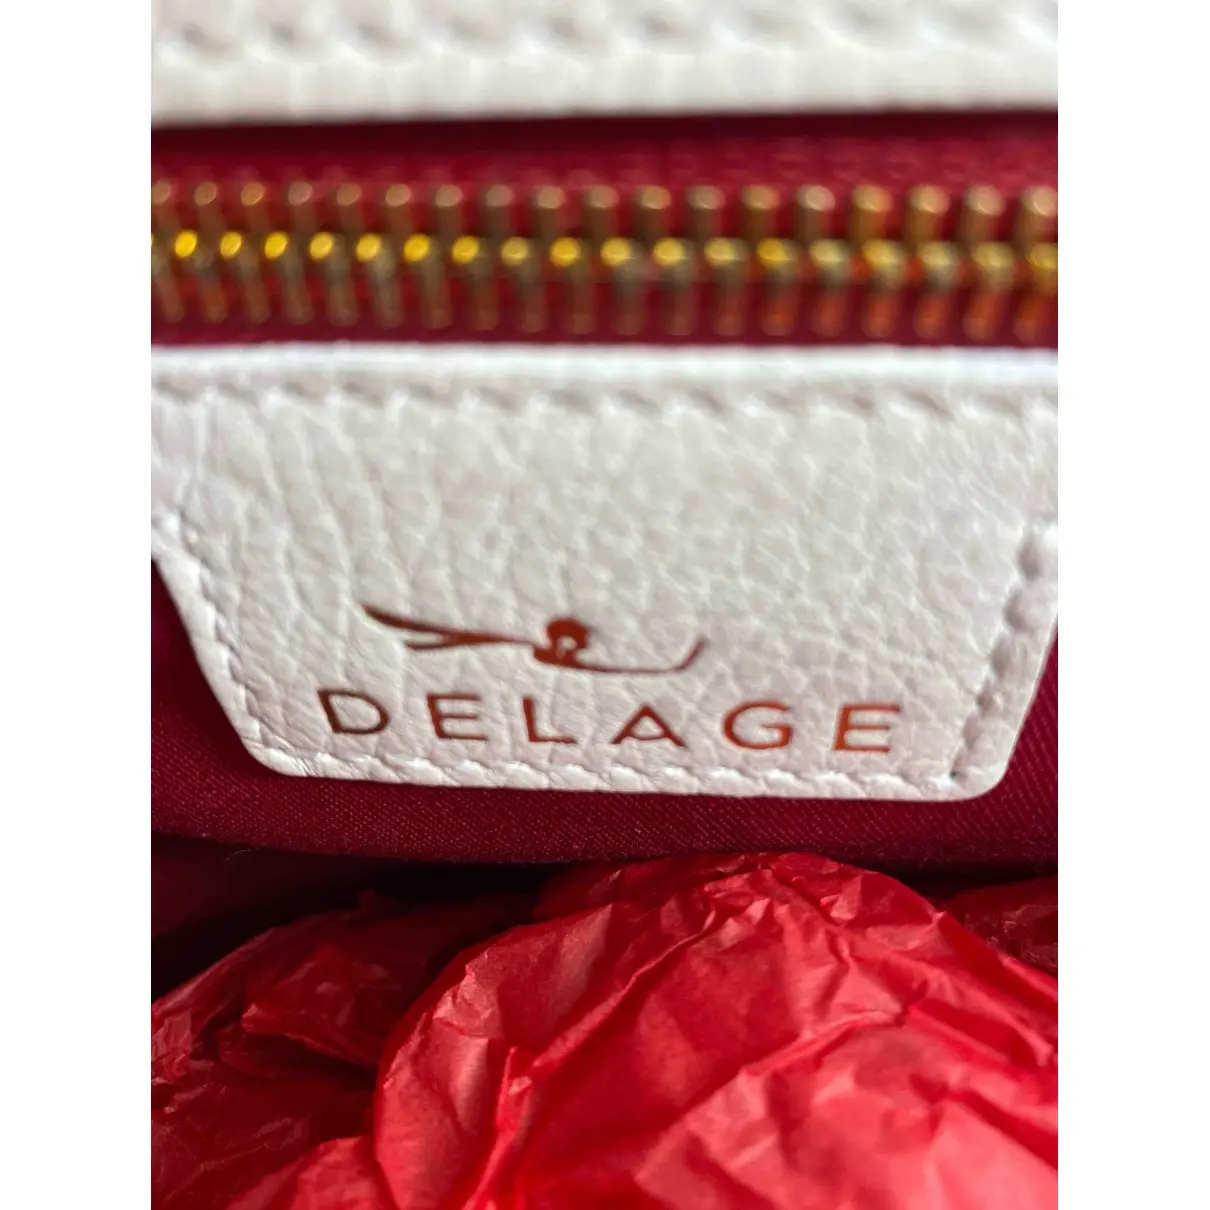 Buy Delage Leather handbag online - Vintage